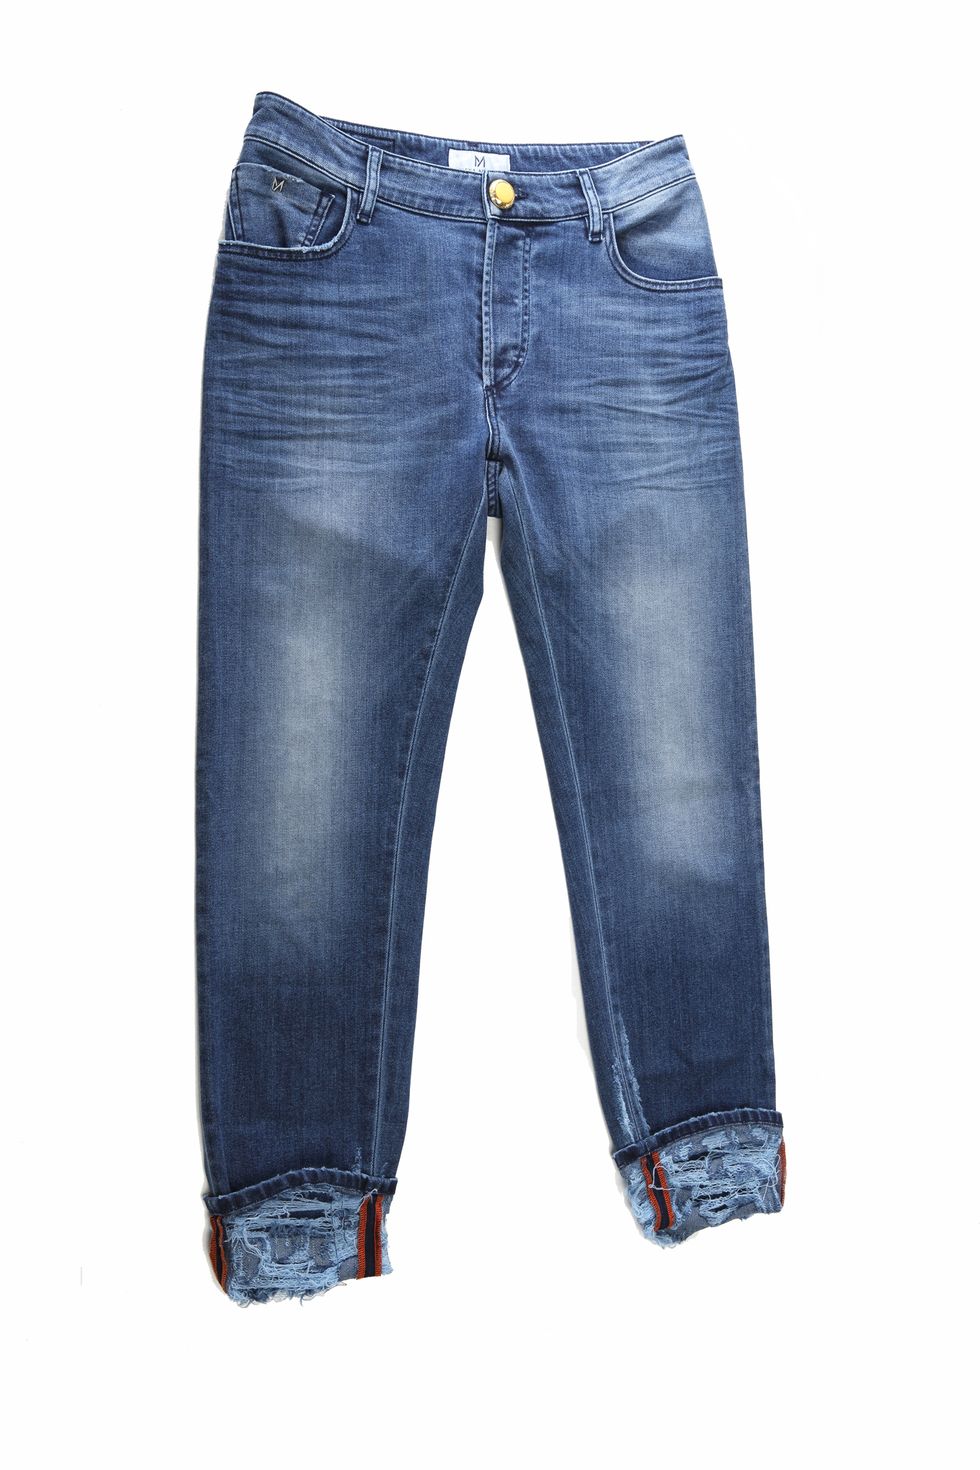 Il jeans che ti fa da push up al lato b ha un brevetto brasiliano per calzarti come un guanto e regalarti un lift ai glutei senza precedenti, Milena Andrade, la designer offre la possibilità di un servizio su misura.